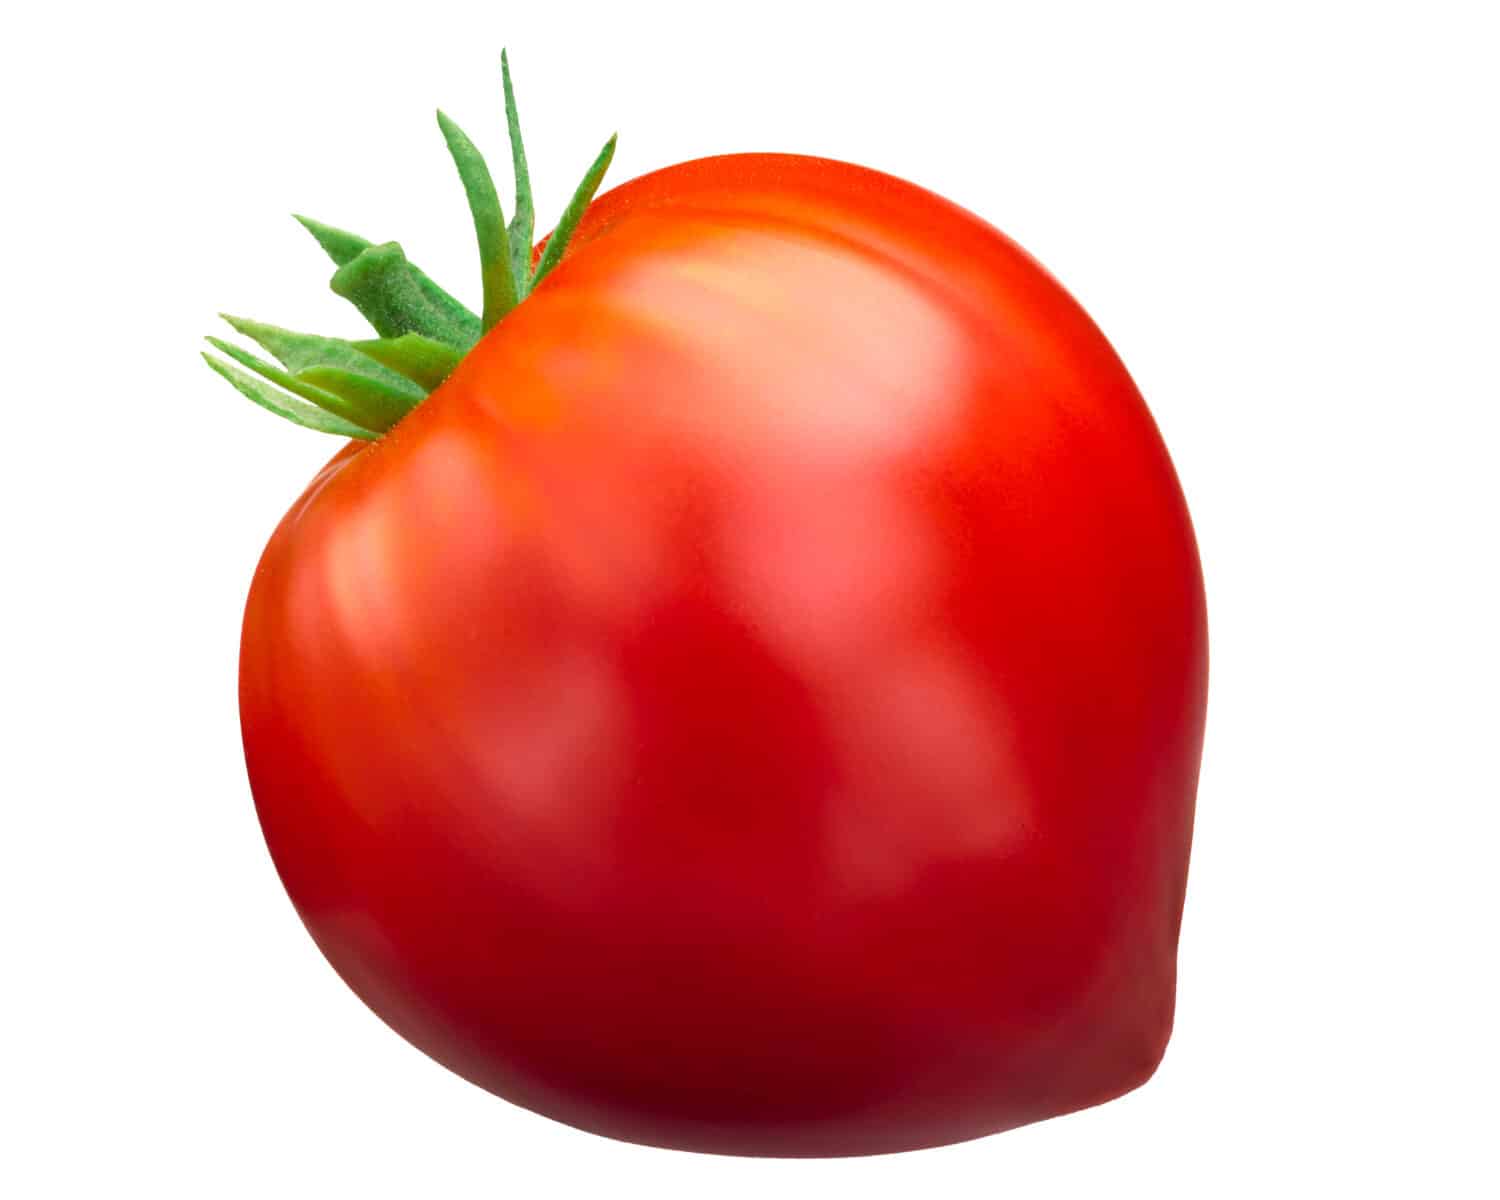 Oxheart tomato (Cuor di bue), ripe, whole